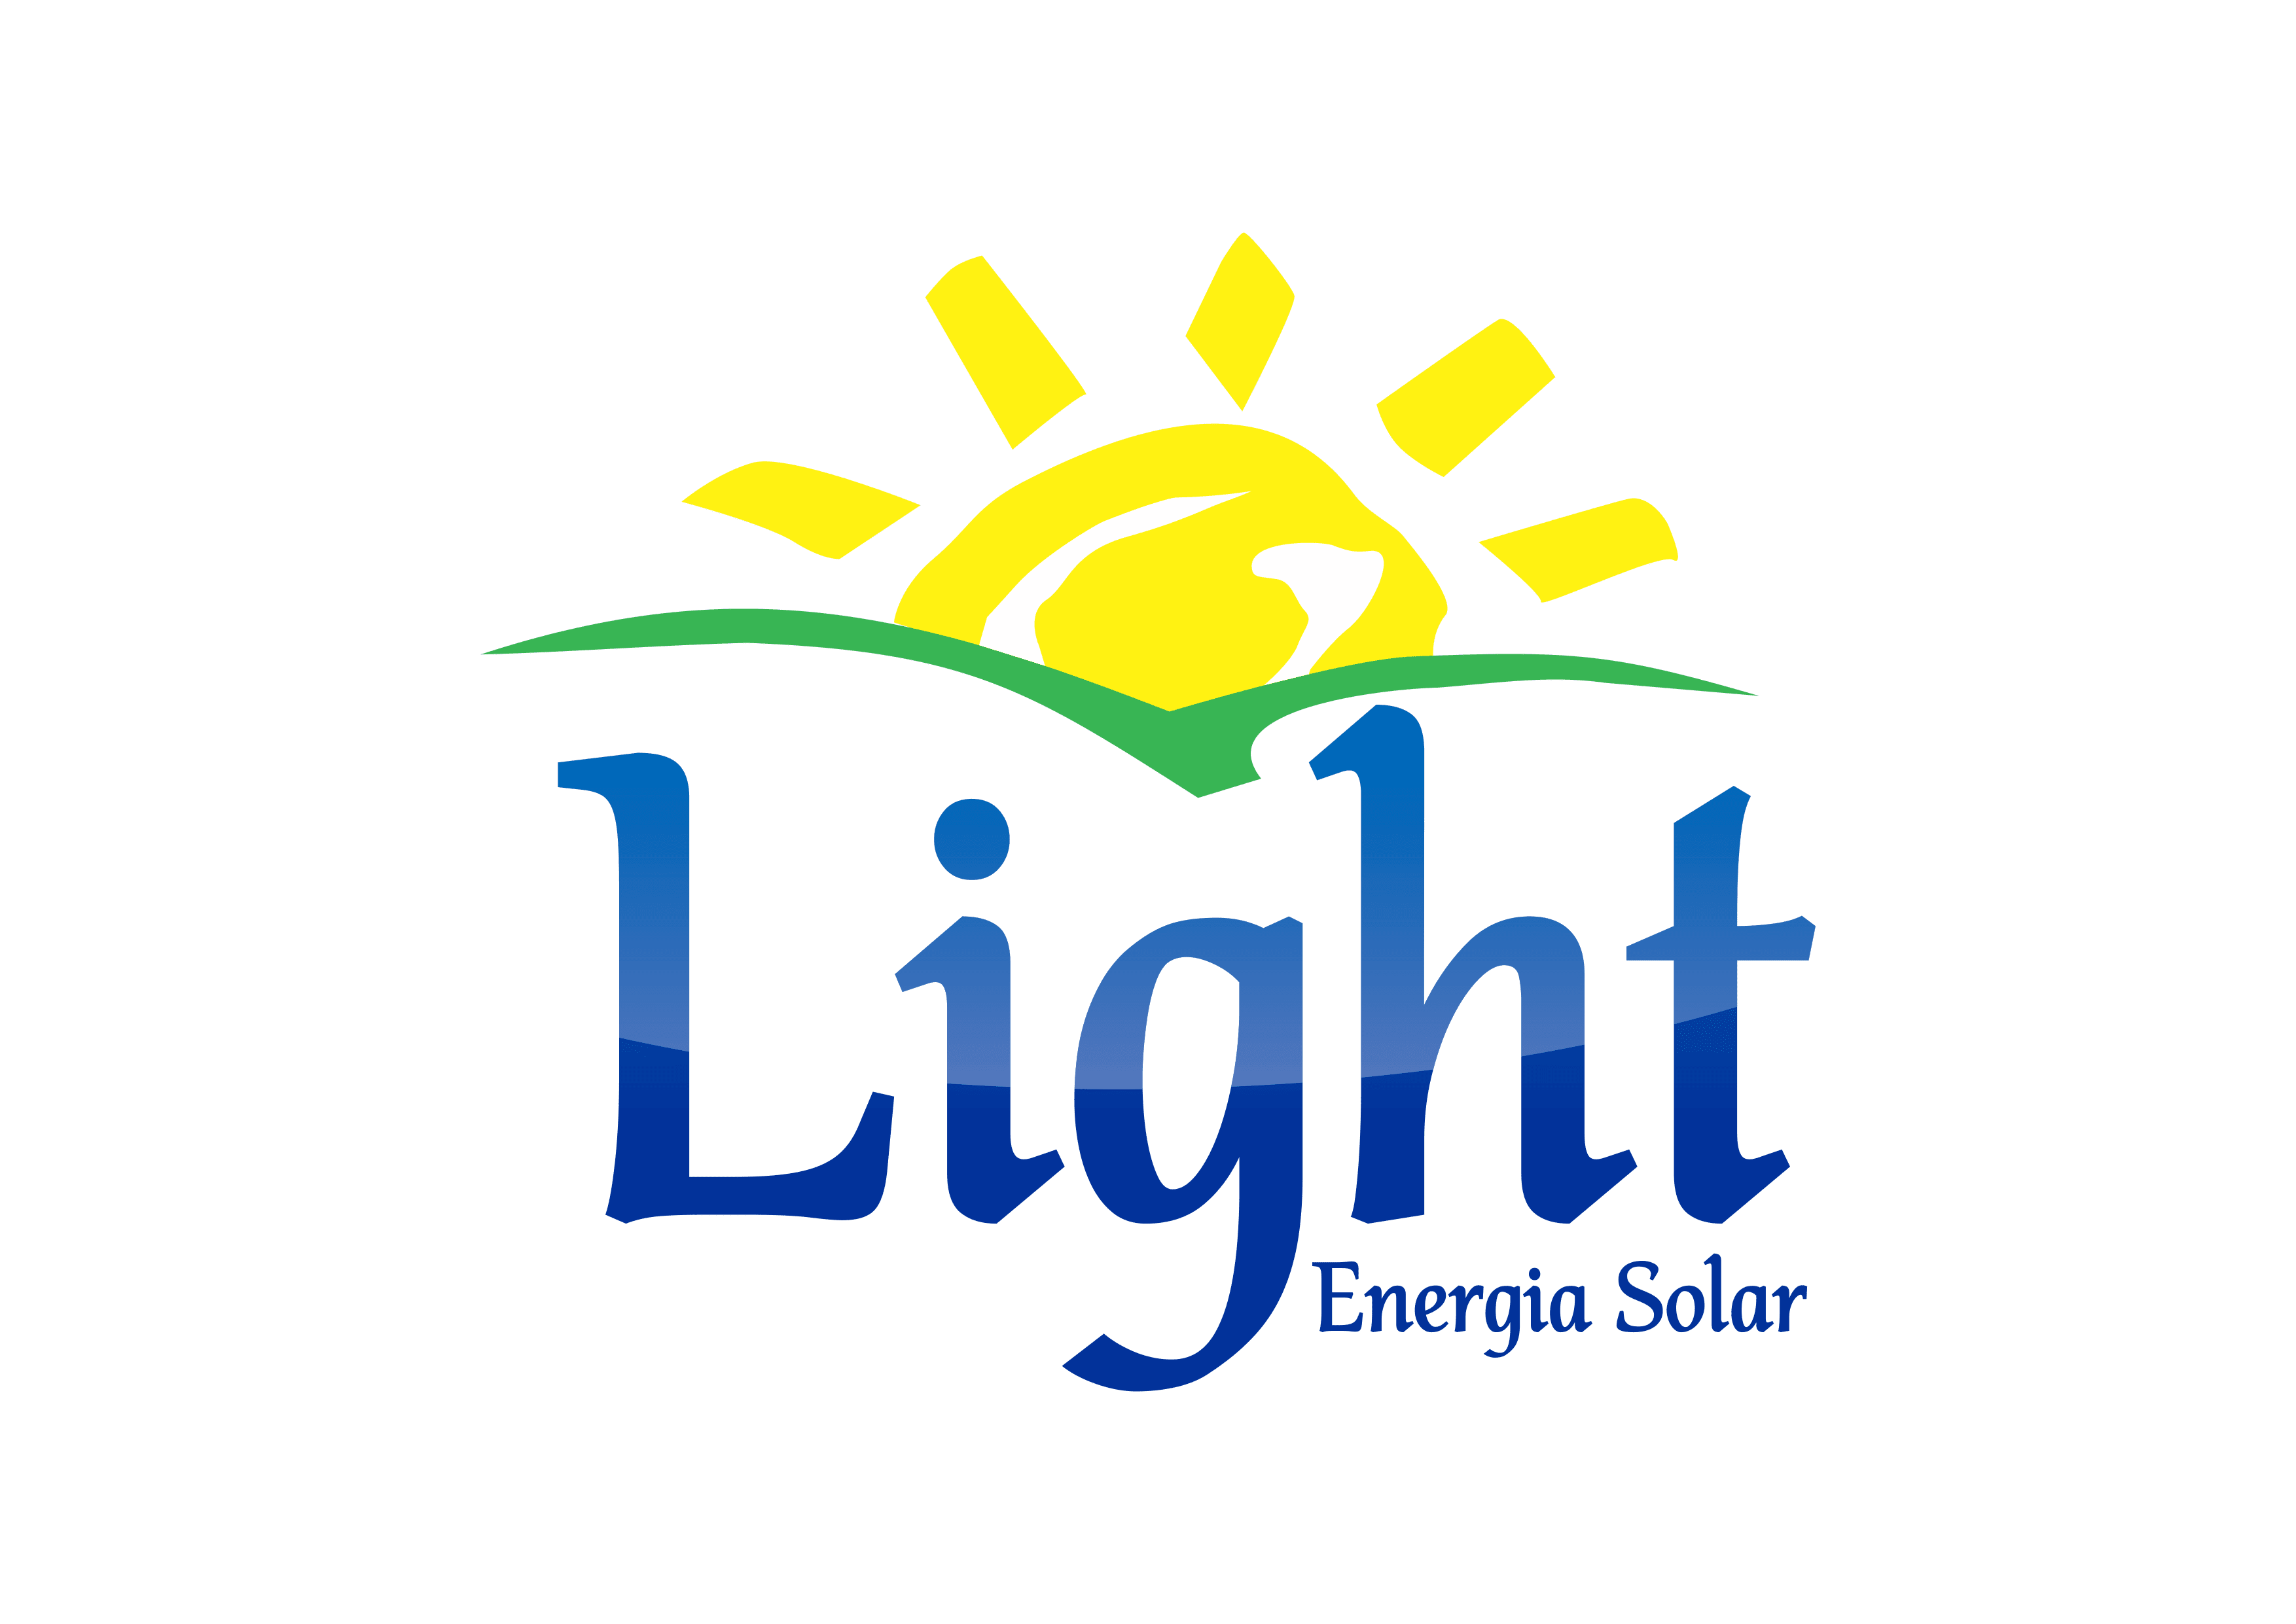 Light Energia Solar